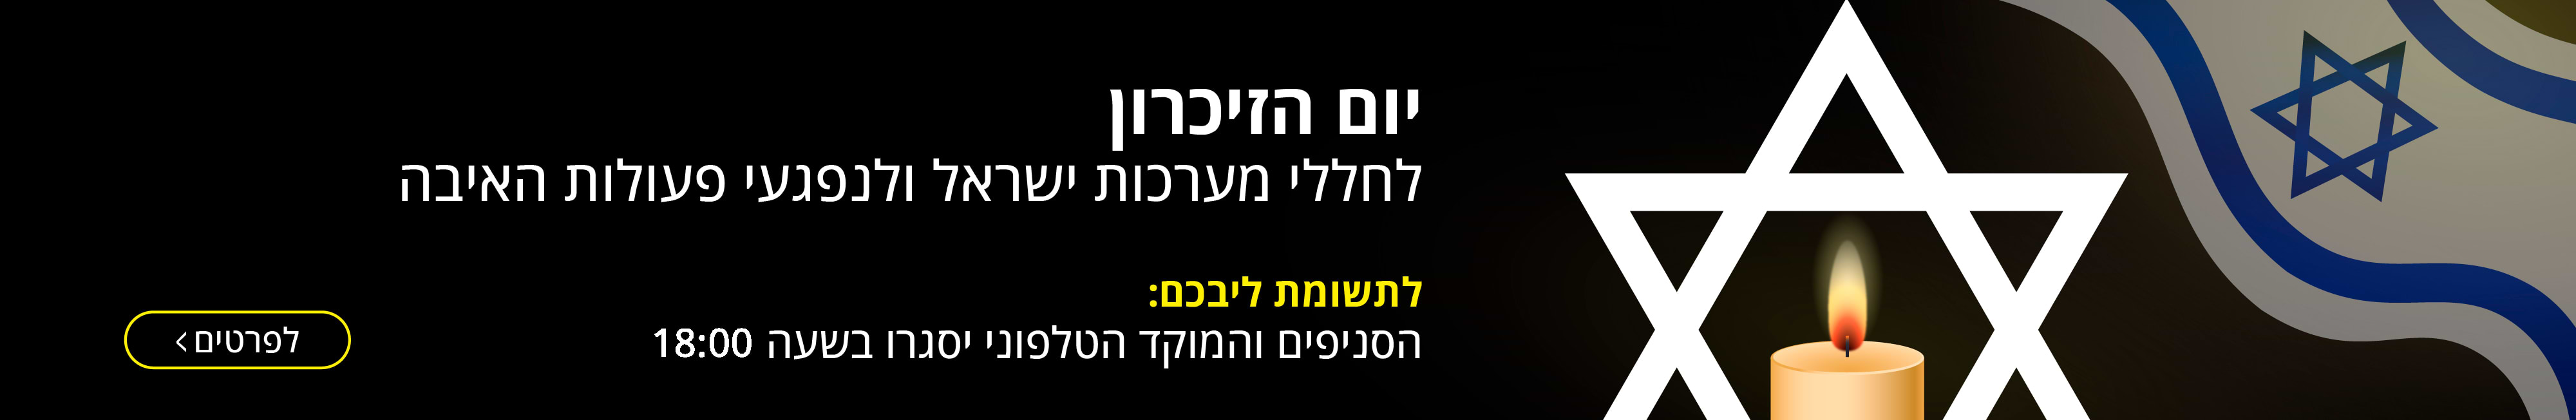 יום הזיכרון לחללי מערכות ישראל ונפגעי פעולות האיבה הסניפים והמוקד הטלפוני יסגרו בשעה 18:00